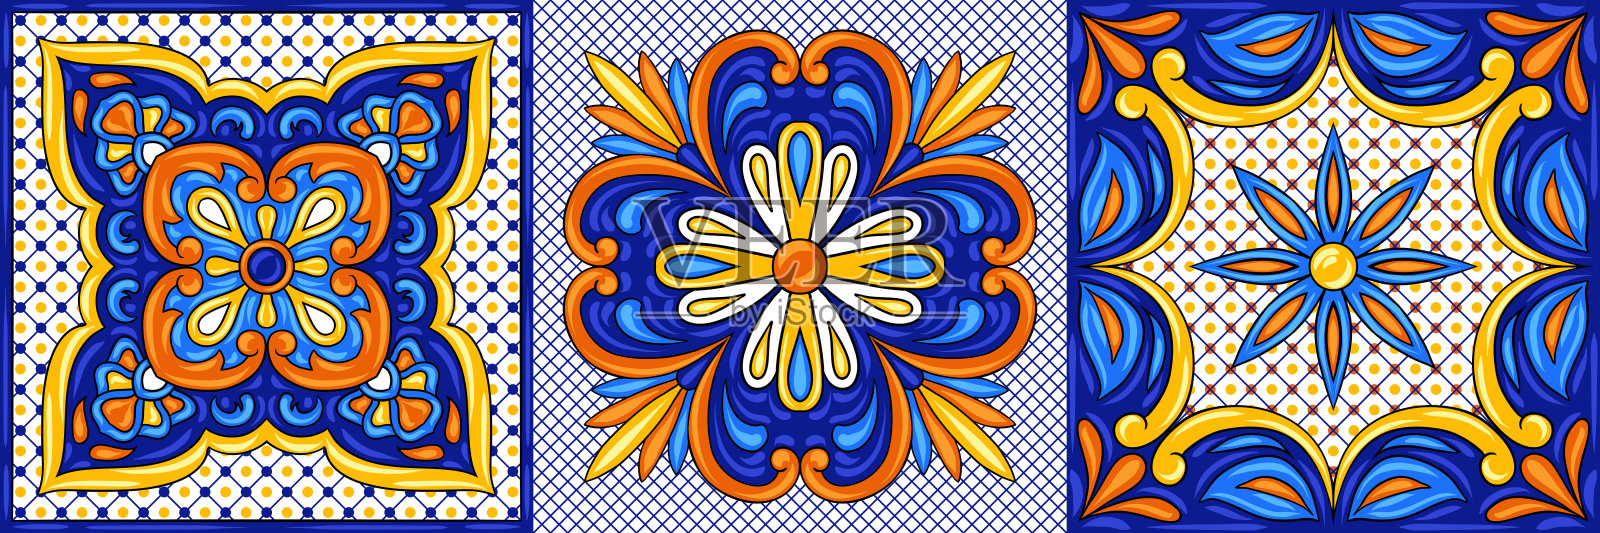 墨西哥塔拉维拉瓷砖图案。民族民间装饰。插画图片素材